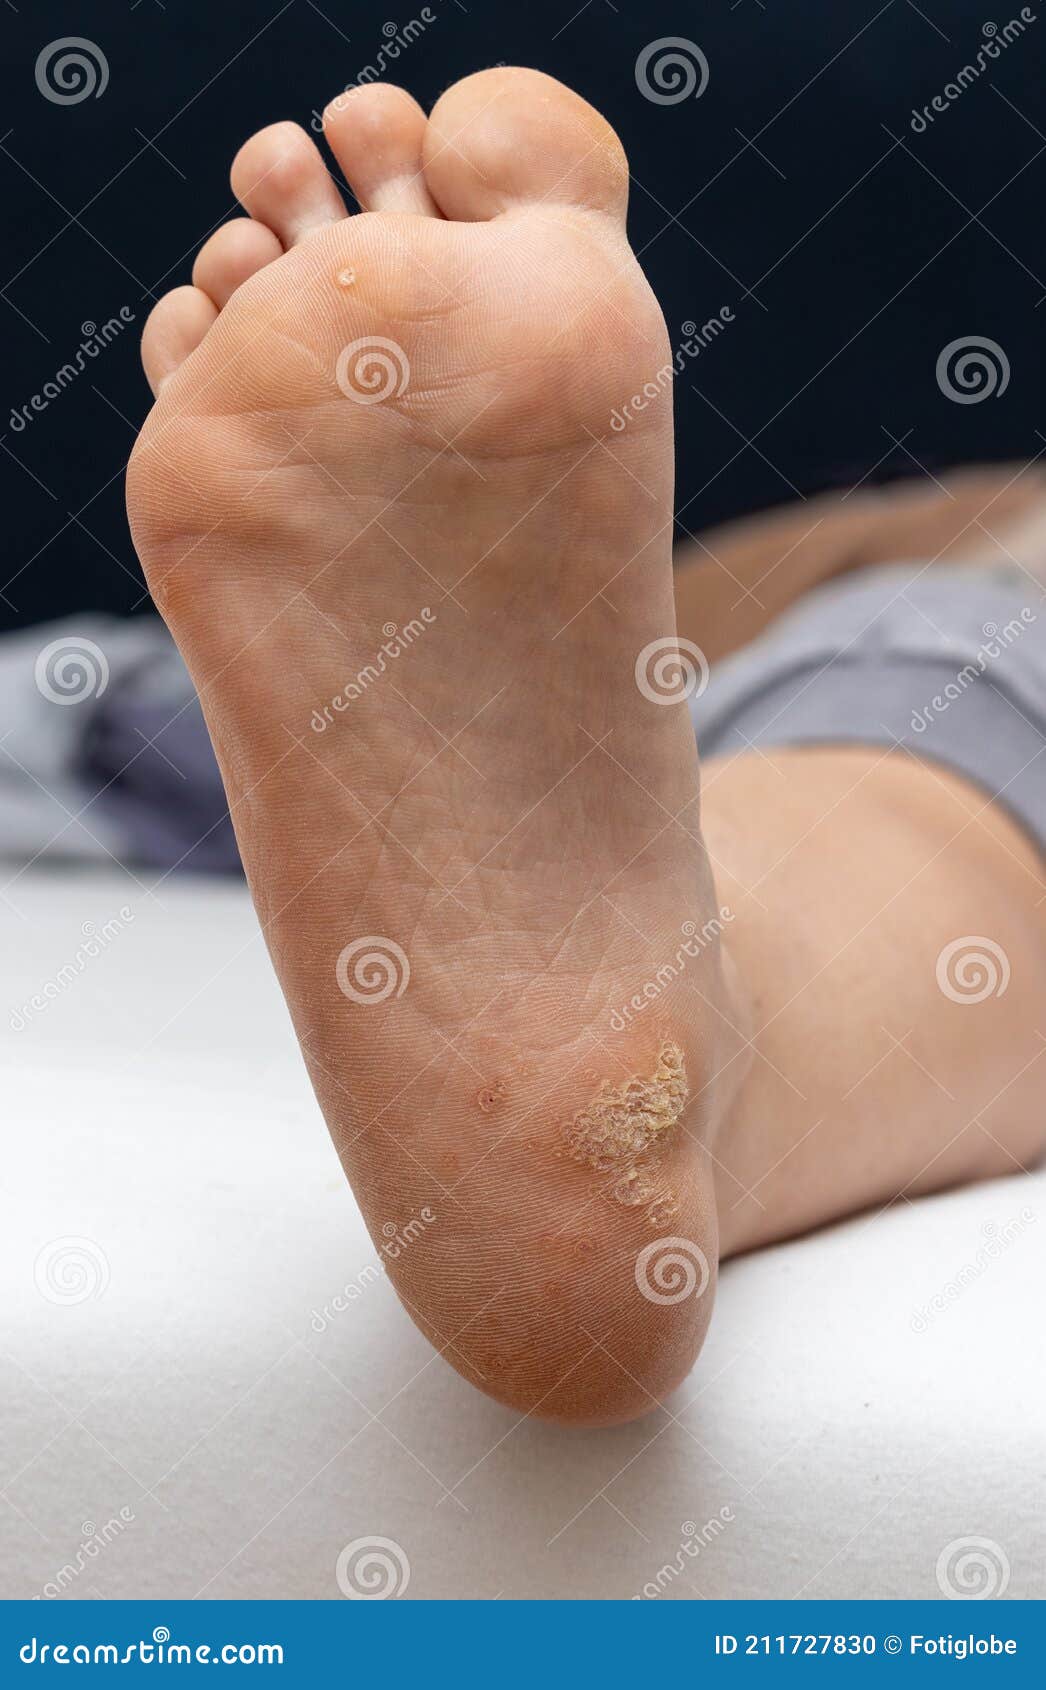 papilloma on soles of feet)